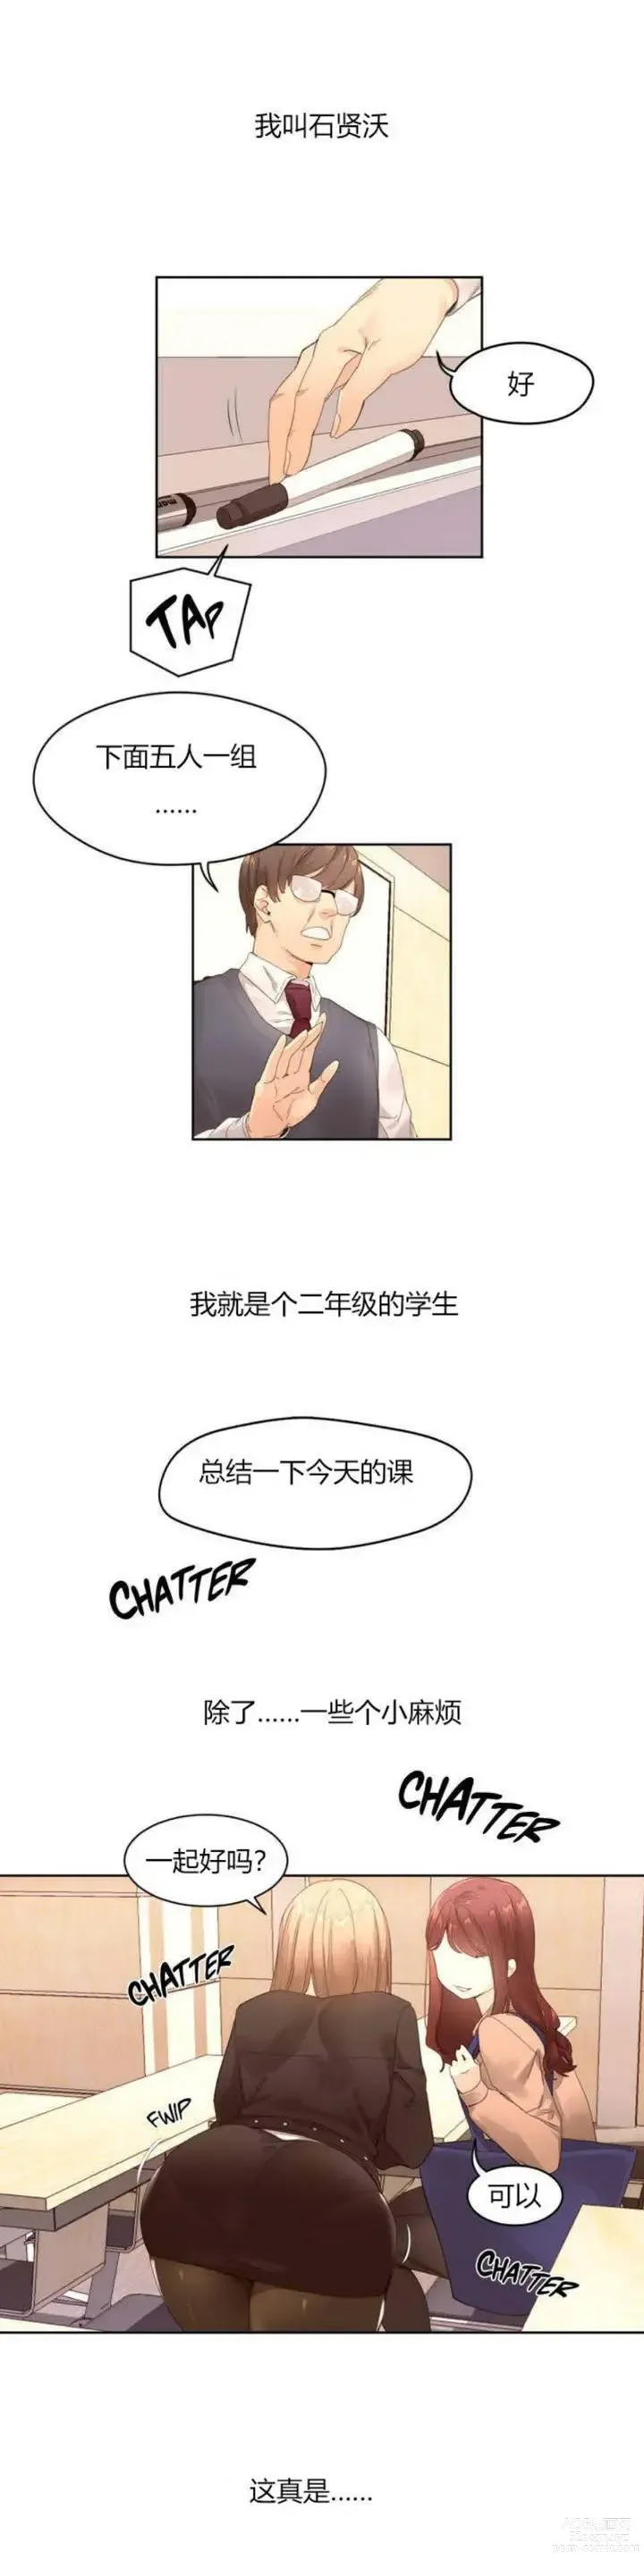 Page 3 of manga 秘香／費洛蒙香水／Pheromone Holic